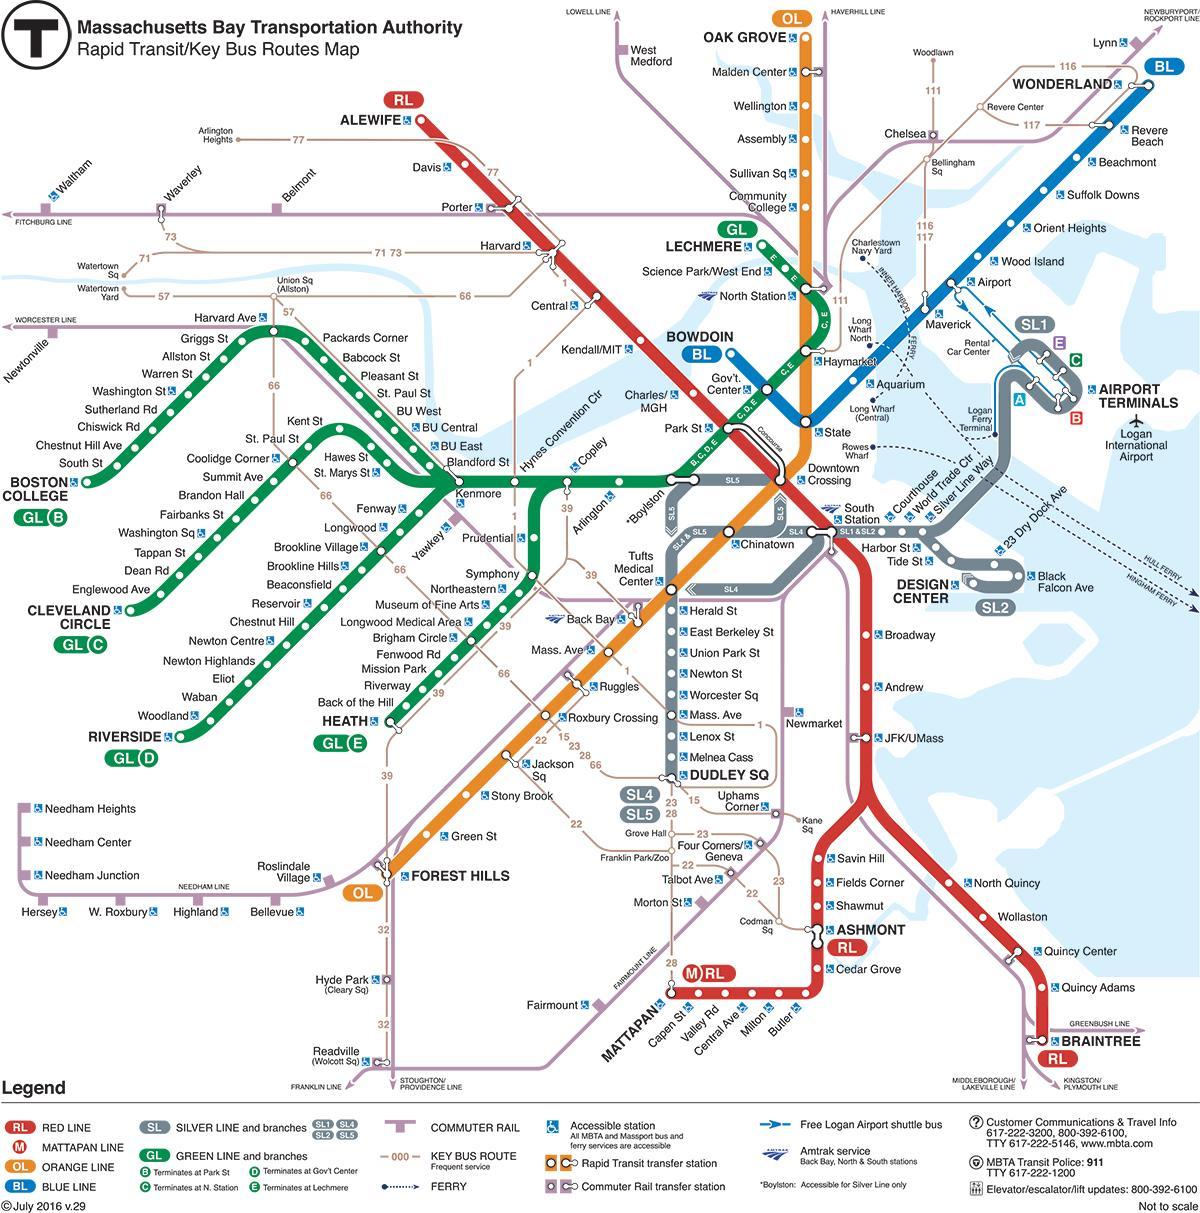 térkép Bostoni metróban